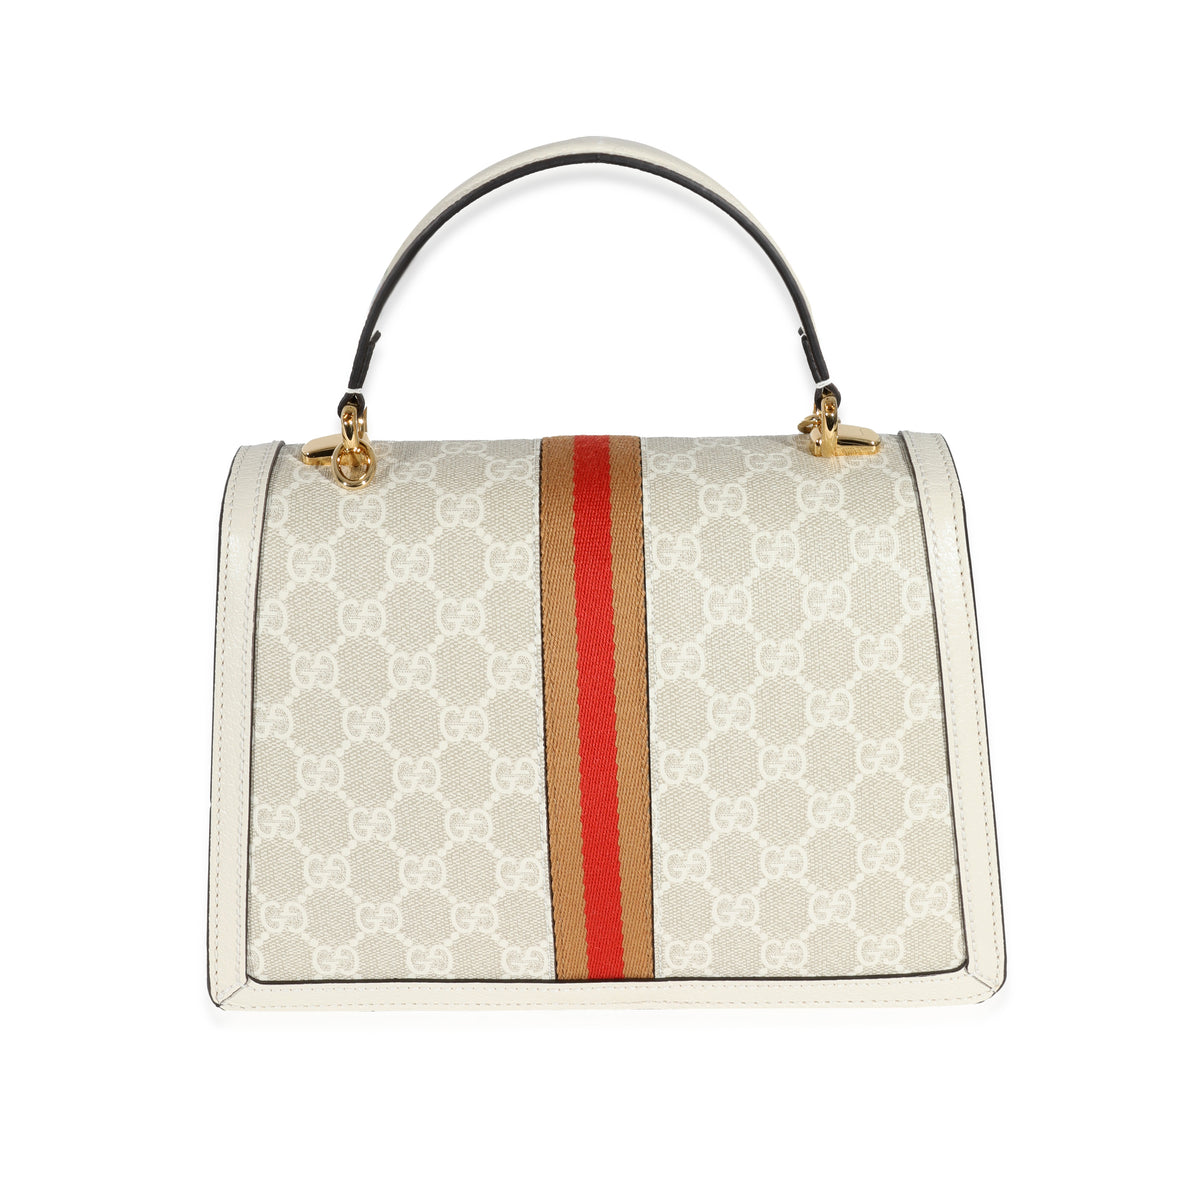 I want a Gucci Ophidia bag. Help me choose pls